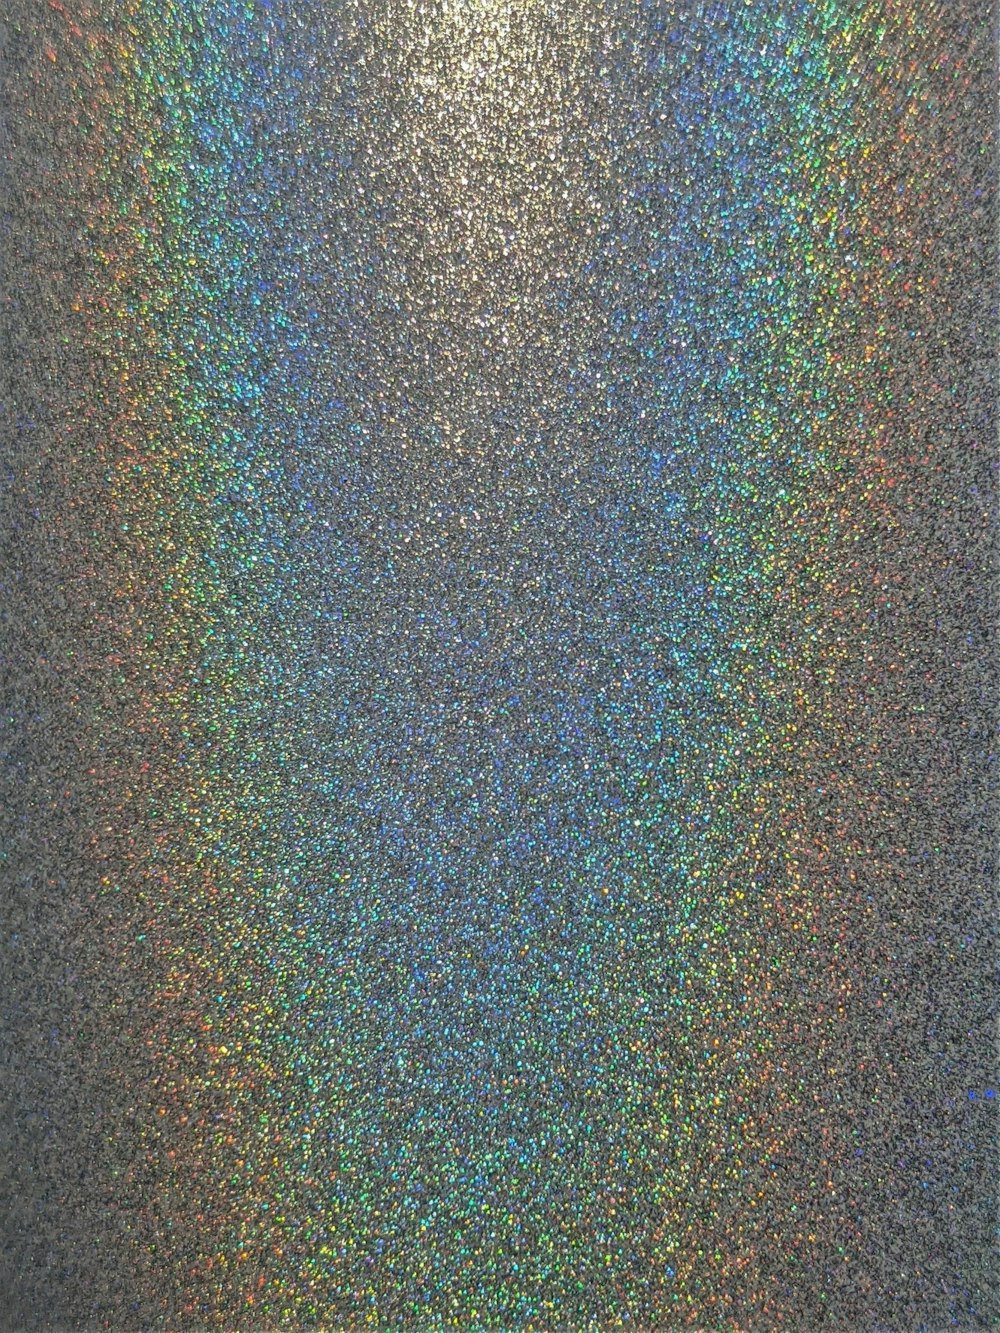 Glitter Wallpapers: Free HD Download [500+ HQ] | Unsplash